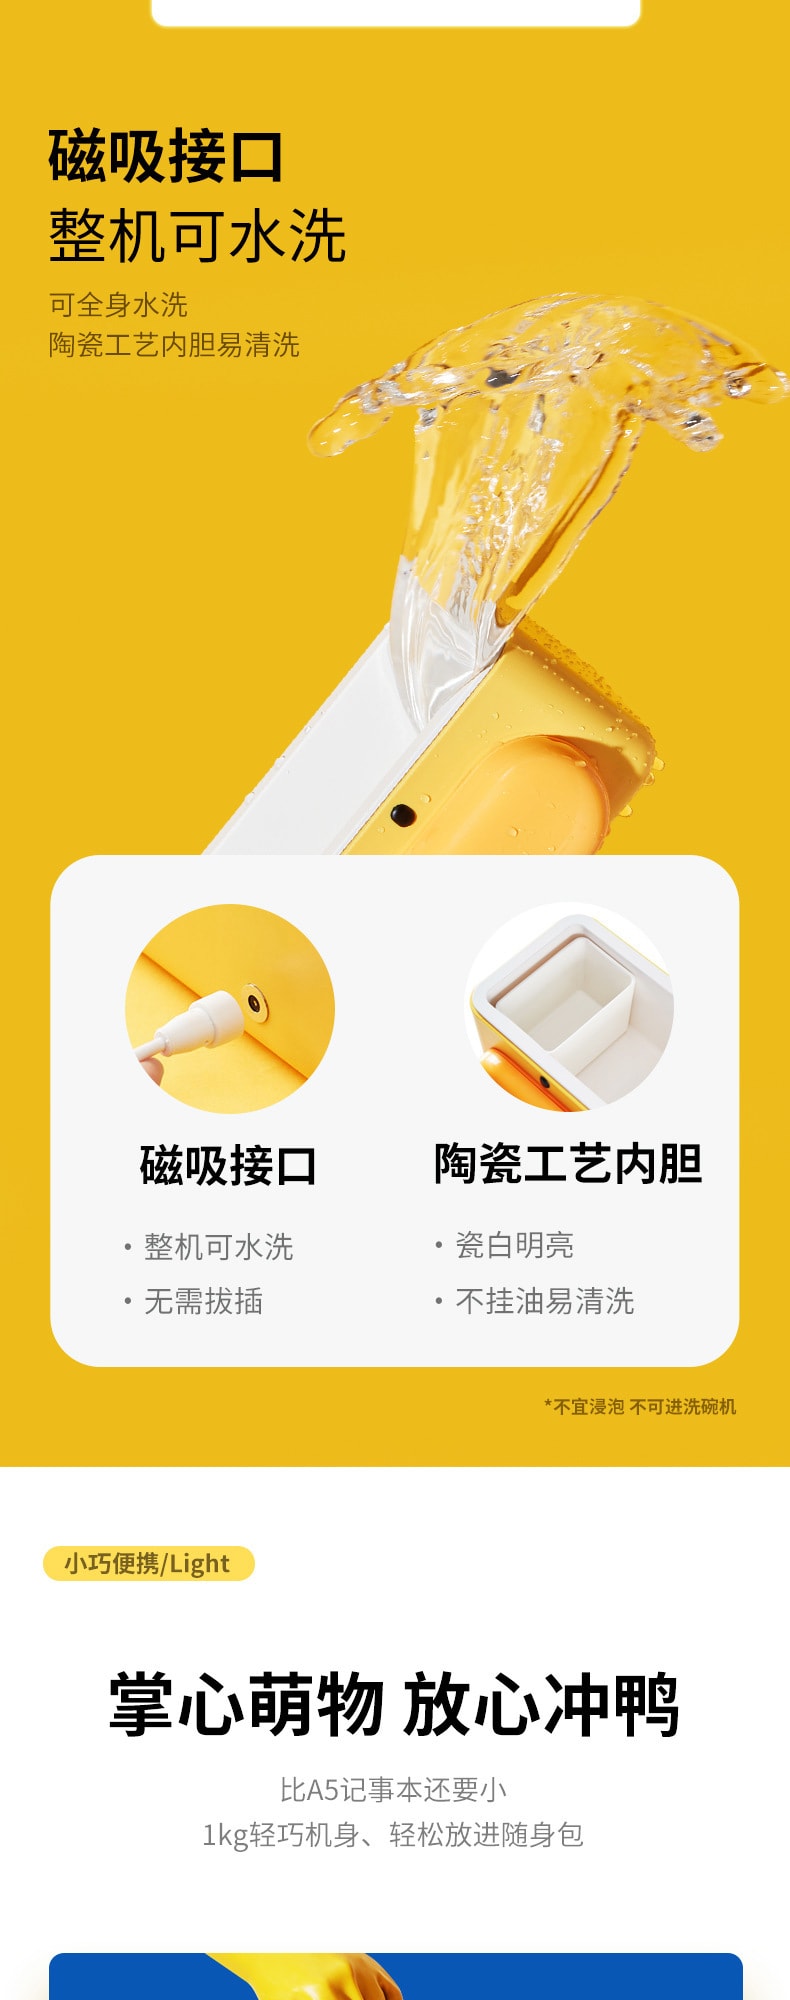 【中國直郵】kalar電熱飯盒保溫多功能便攜 好黃鴨